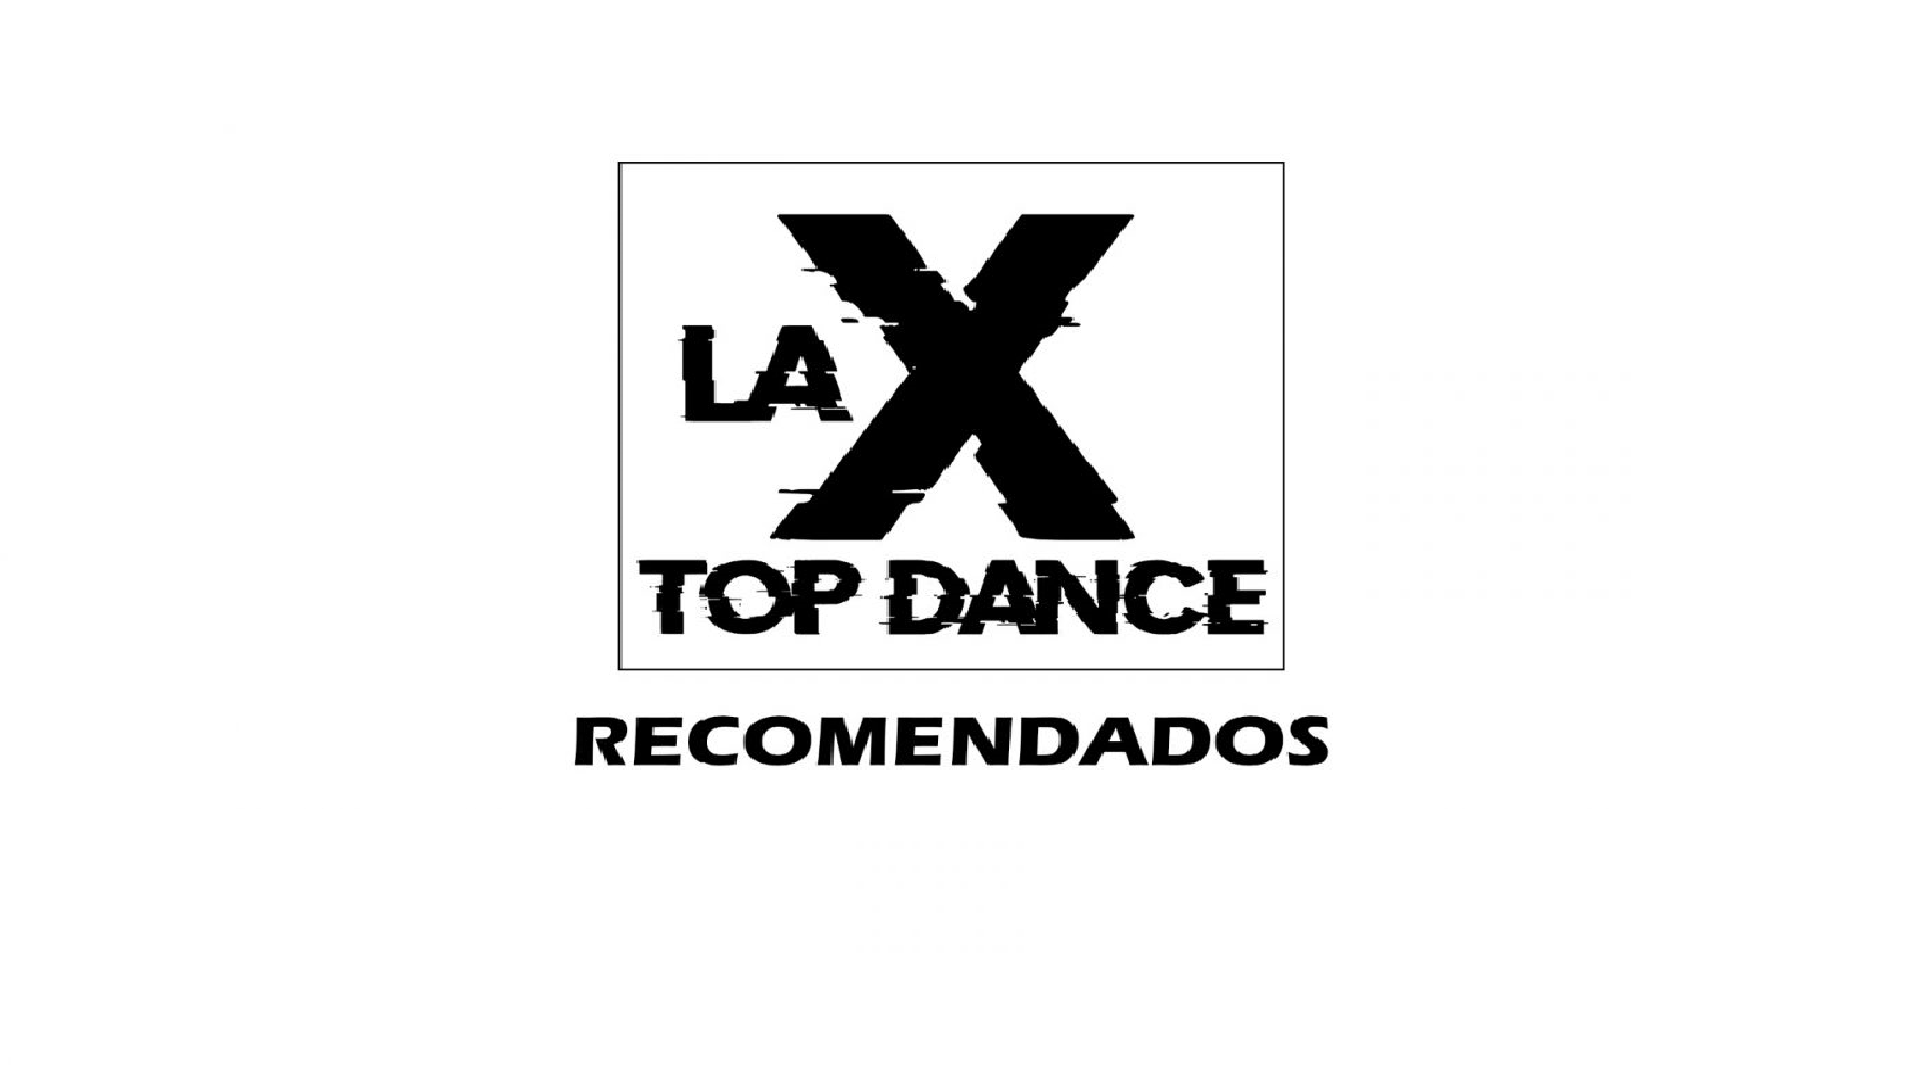 RECOMENDADOS LA X TOP DANCE 9 DE DICIEMBRE